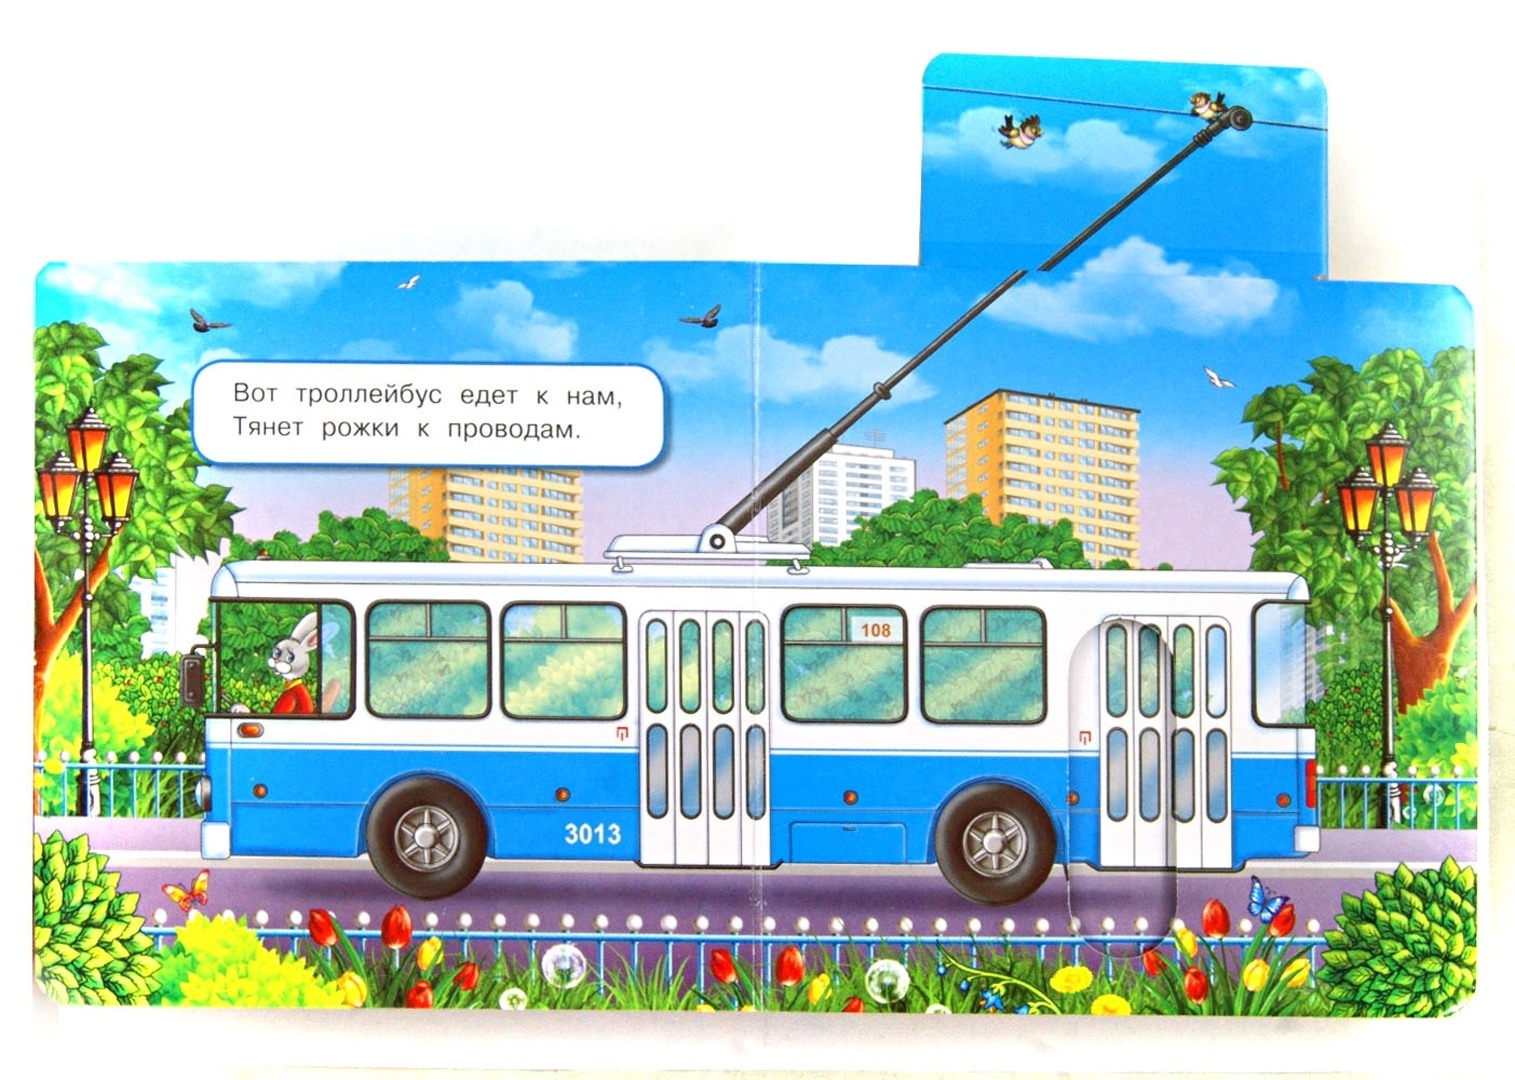 Троллейбус буквы. Троллейбус для детей. Троллейбус для дошкольников. Городской транспорт для детей. Троллейбус иллюстрация для детей.